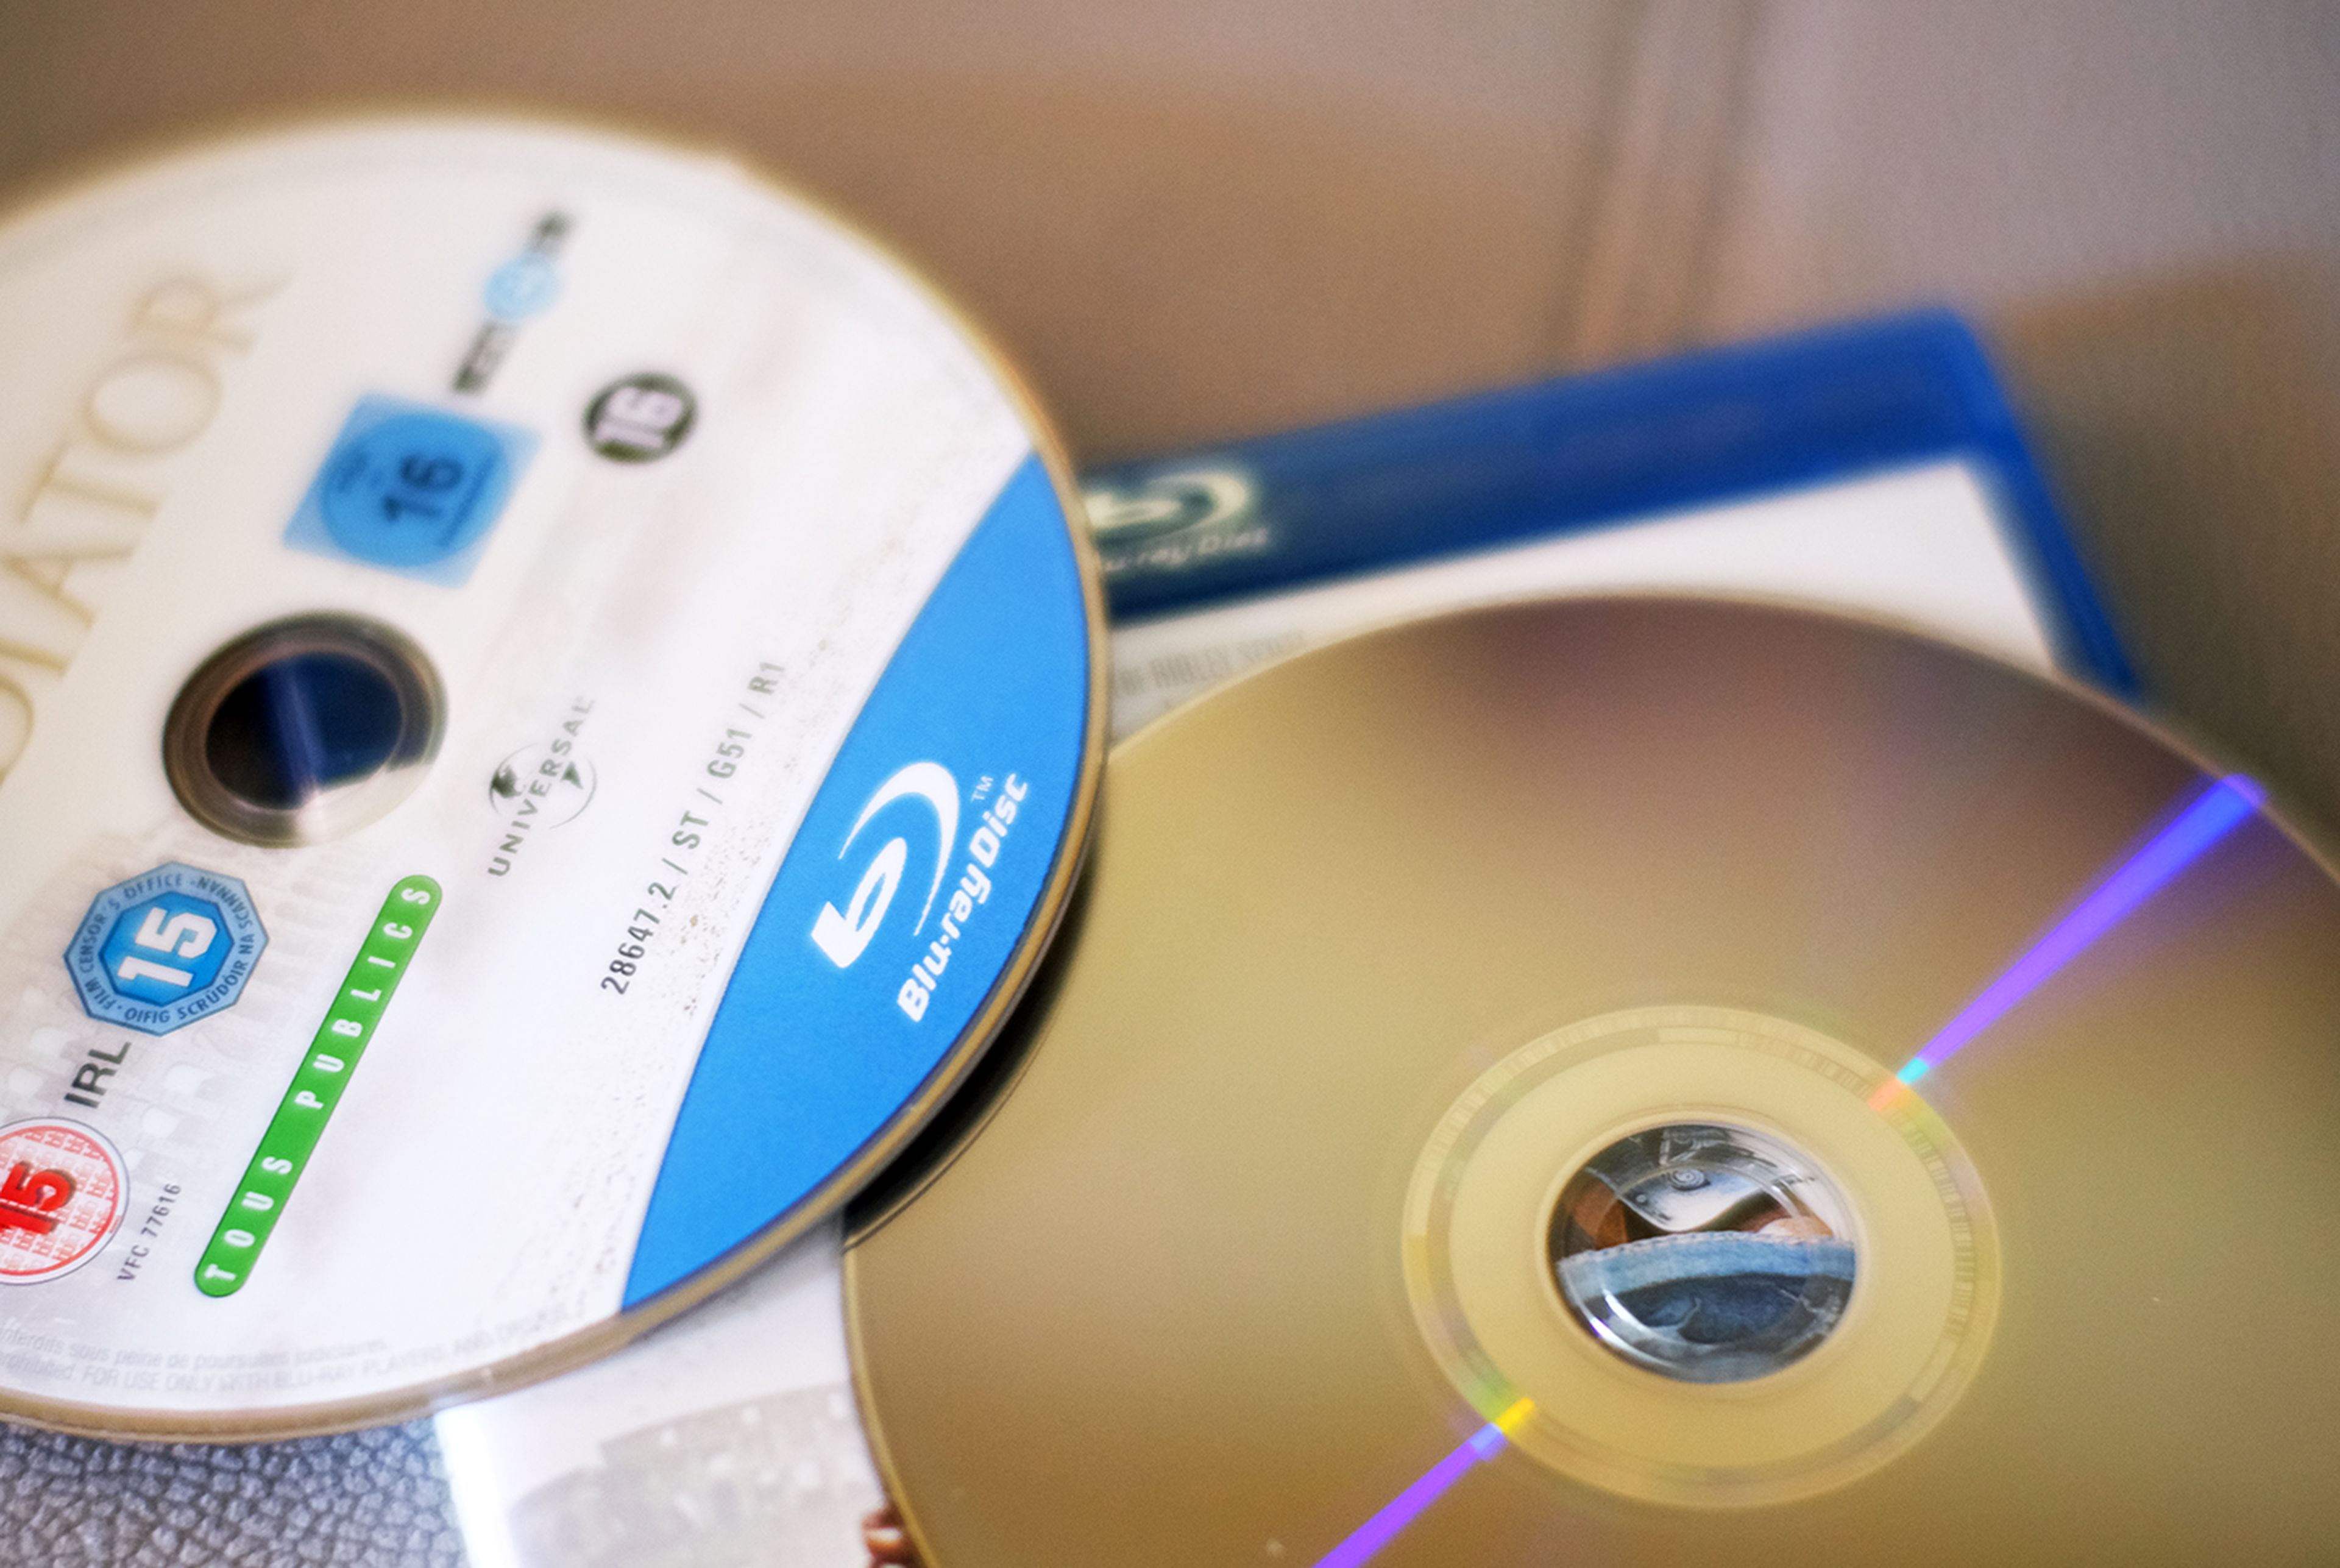 Samsung abandona la producción de reproductores Blu-ray, el streaming sigue  arrinconando al formato físico